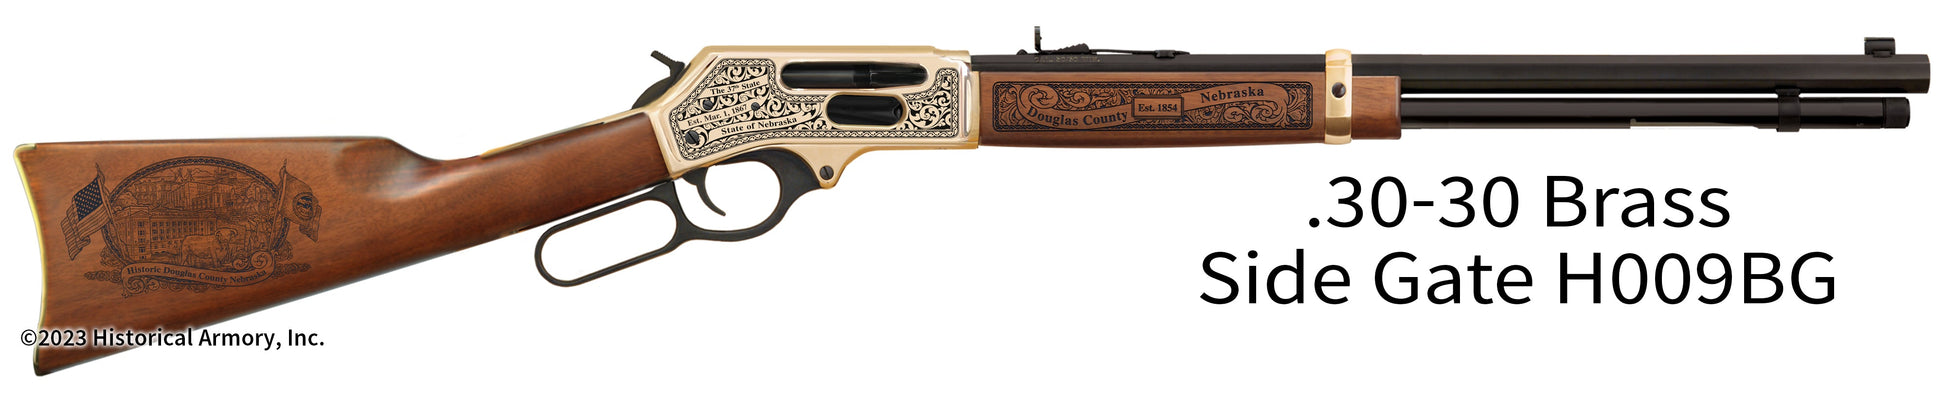 Douglas County Nebraska Engraved Henry .30-30 Brass Side Gate Rifle